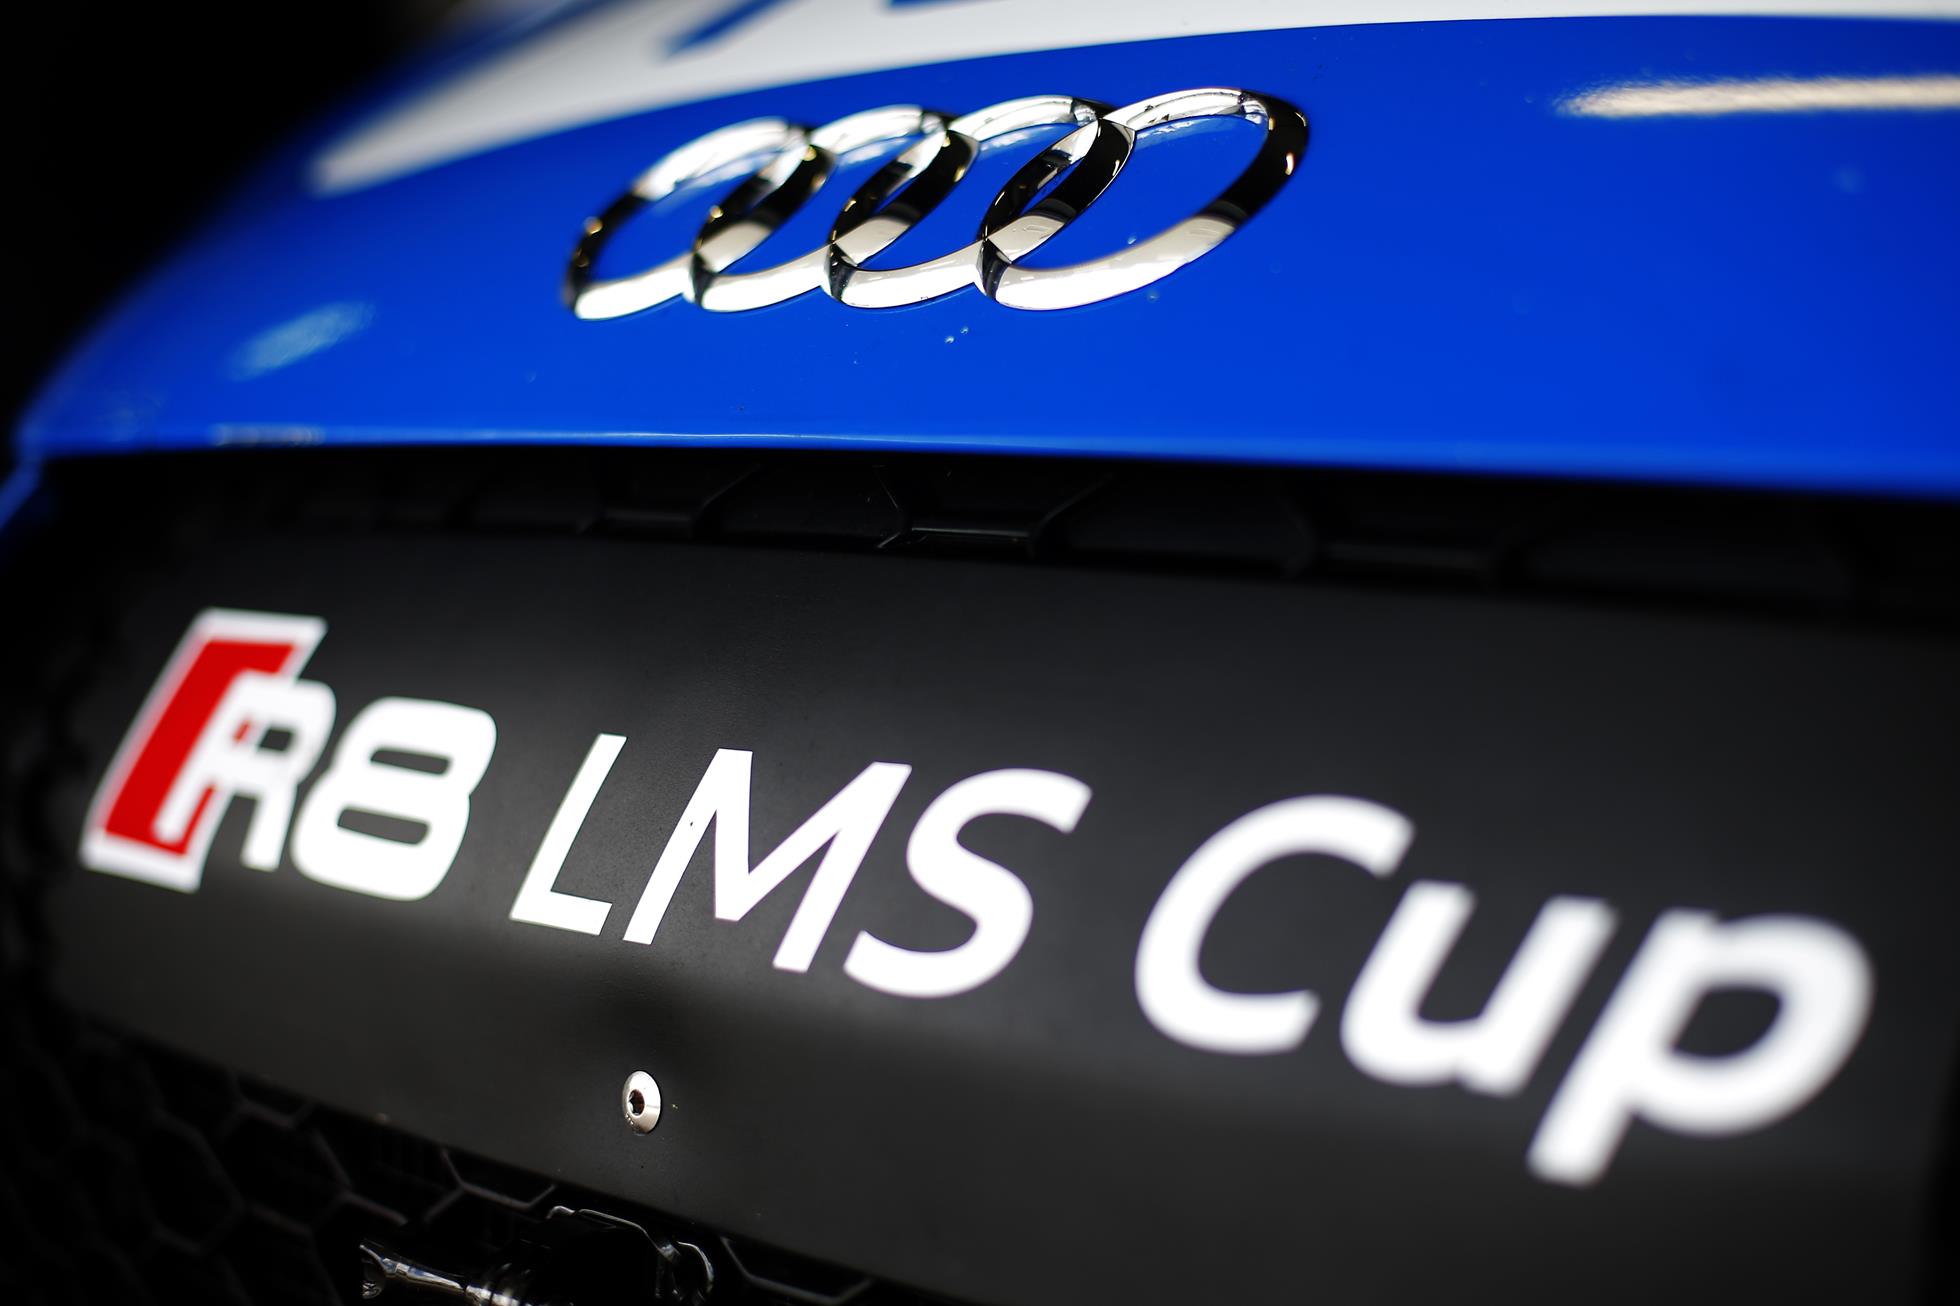 Audi R8 LMS Cup announces 2017 calendar